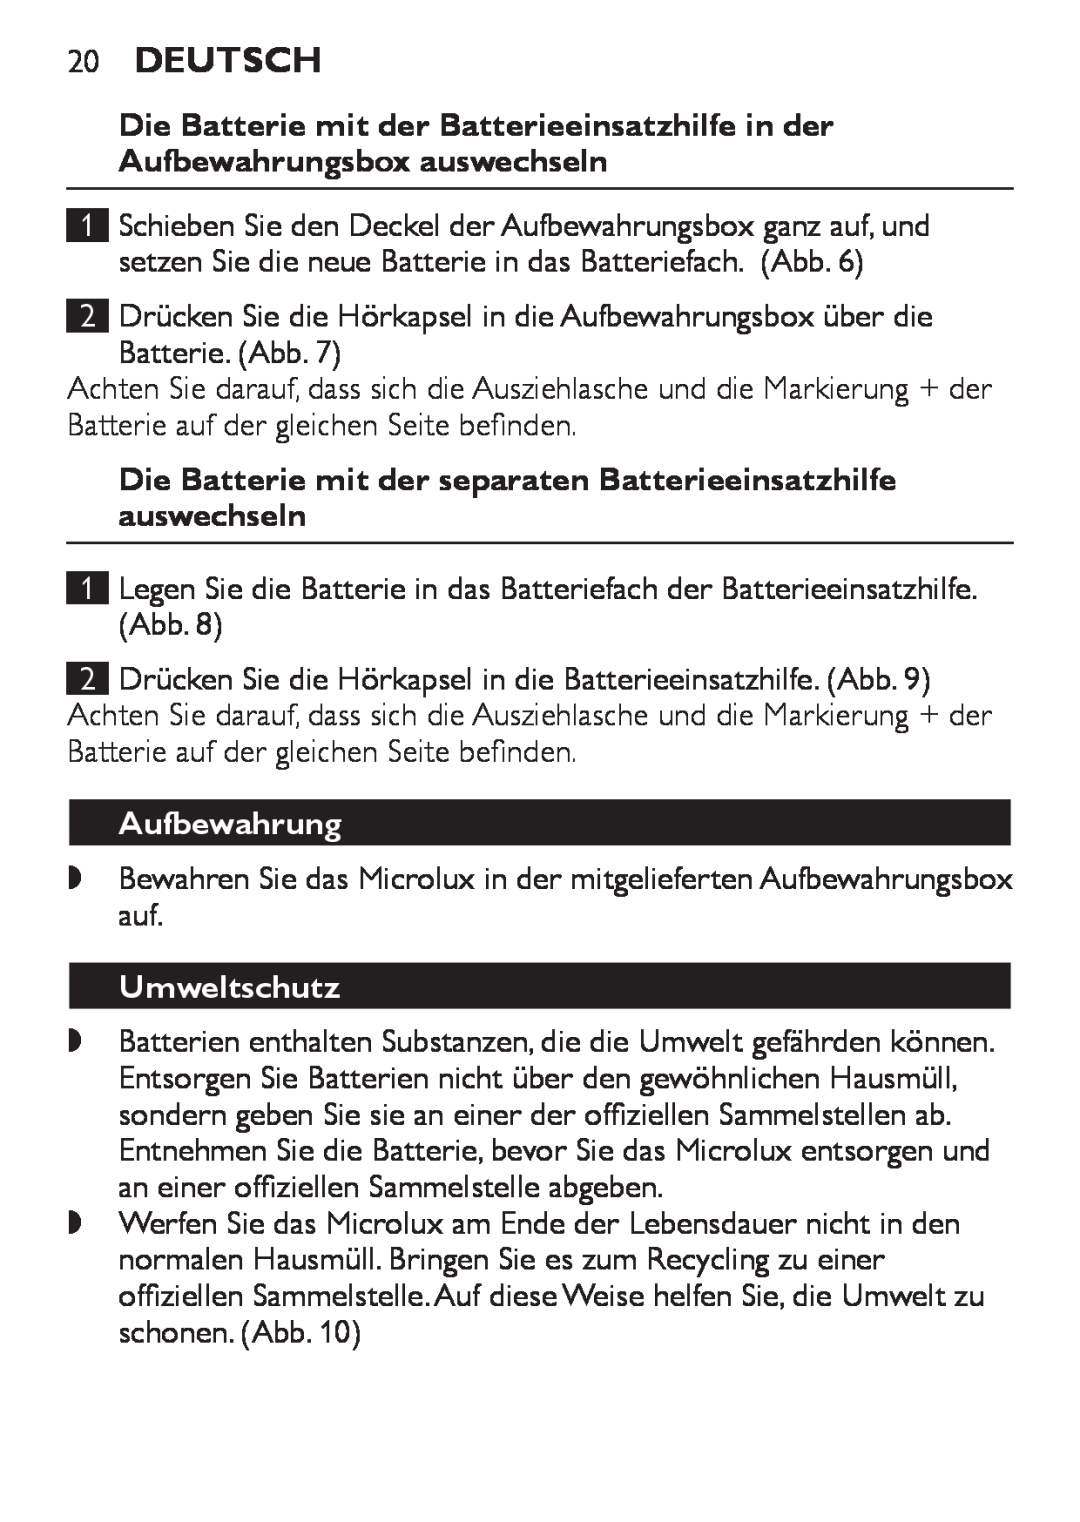 Philips HC8900 user manual 20Deutsch, Aufbewahrung, Umweltschutz 